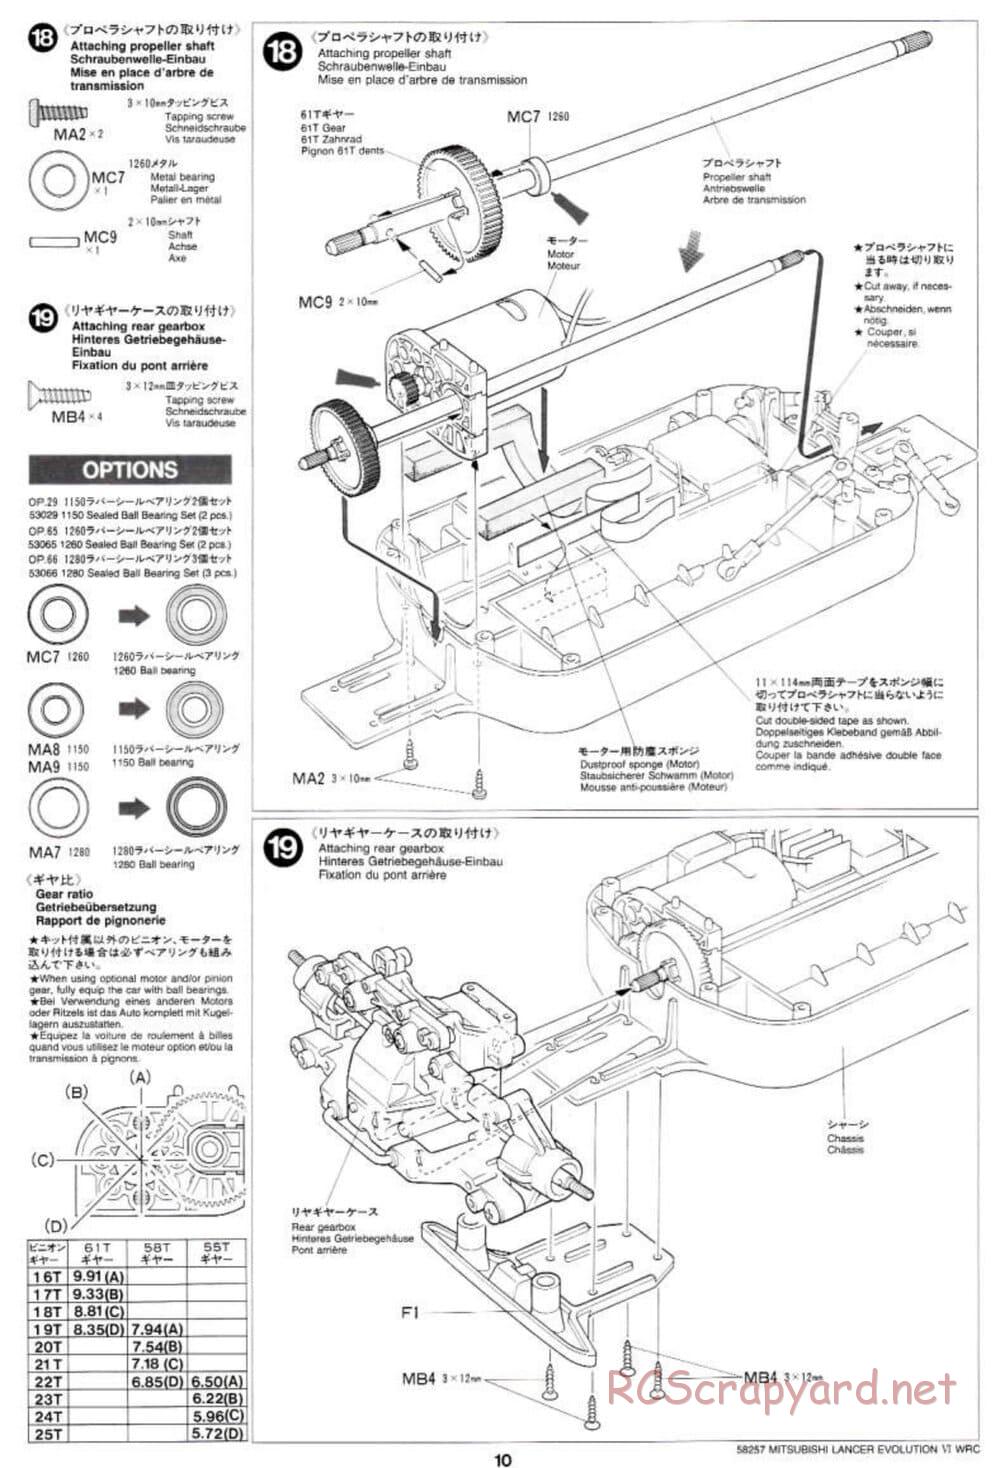 Tamiya - Mitsubishi Lancer Evolution VI WRC - TB-01 Chassis - Manual - Page 10